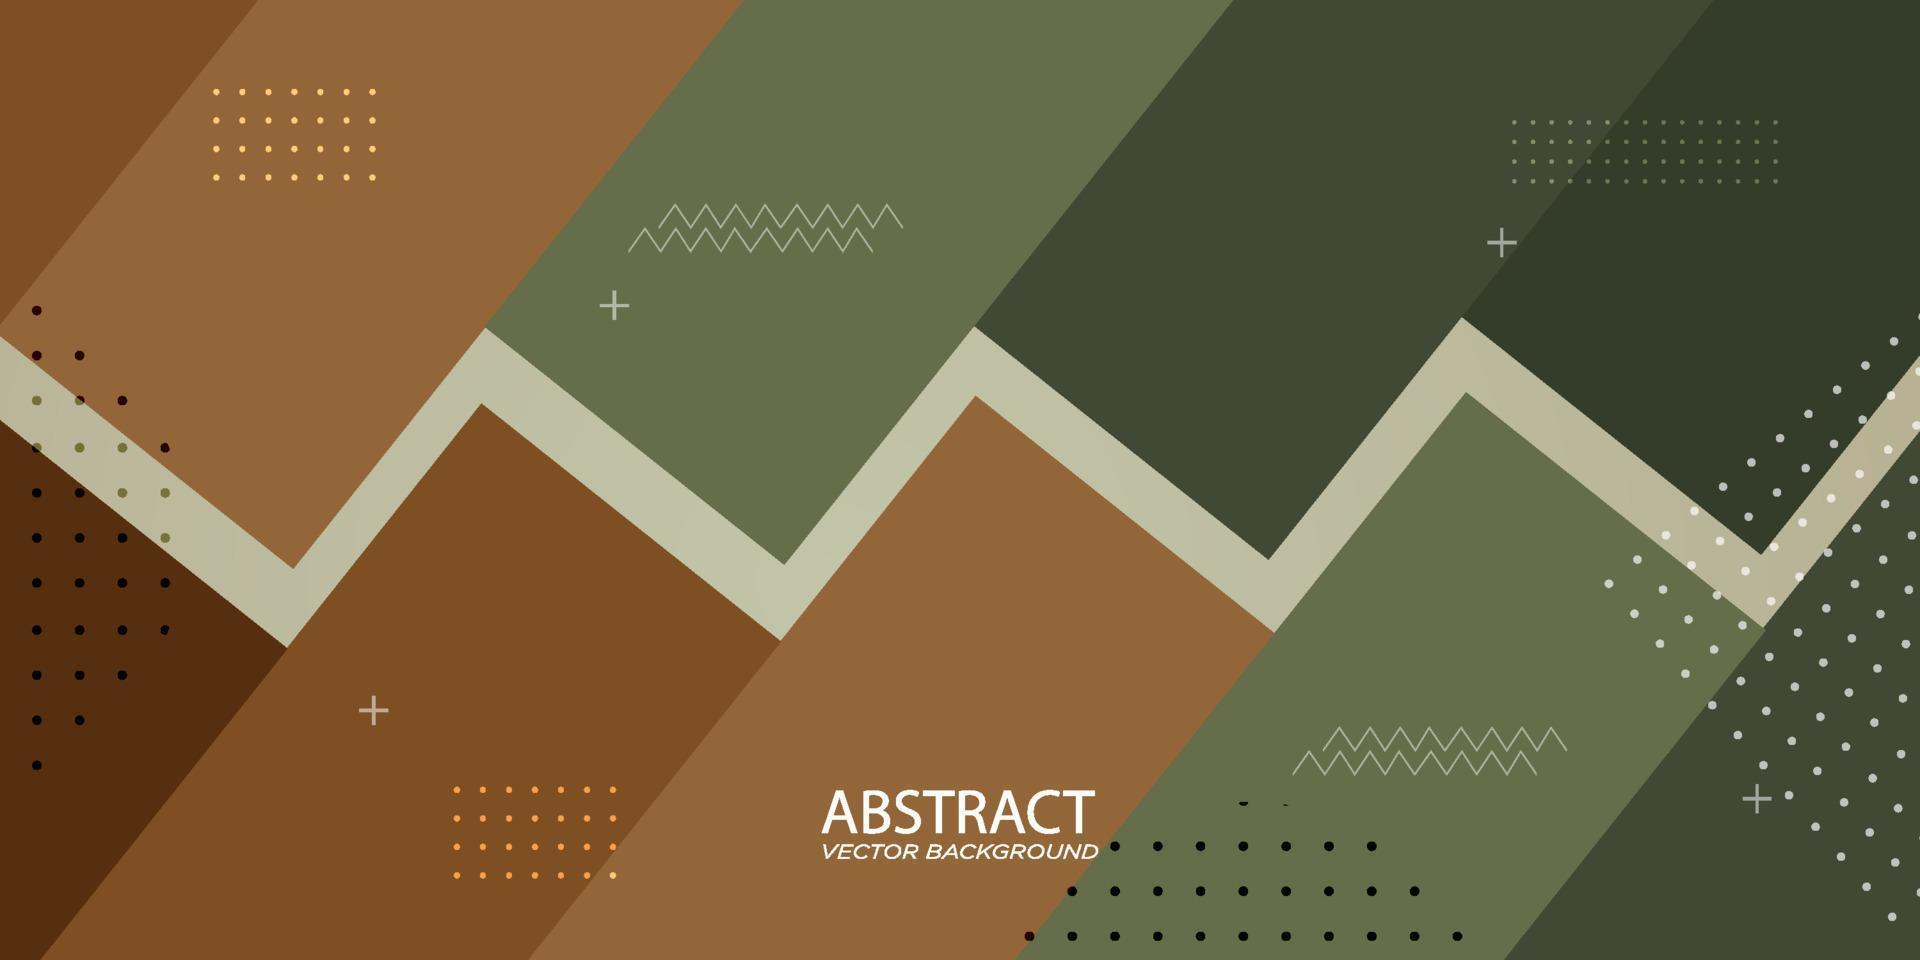 arte geométrico de fondo abstracto en verde, marrón, beige. gráfico de fondo en zigzag de líneas horizontales perfectas para diseño retro u otro vector ads.eps10 moderno